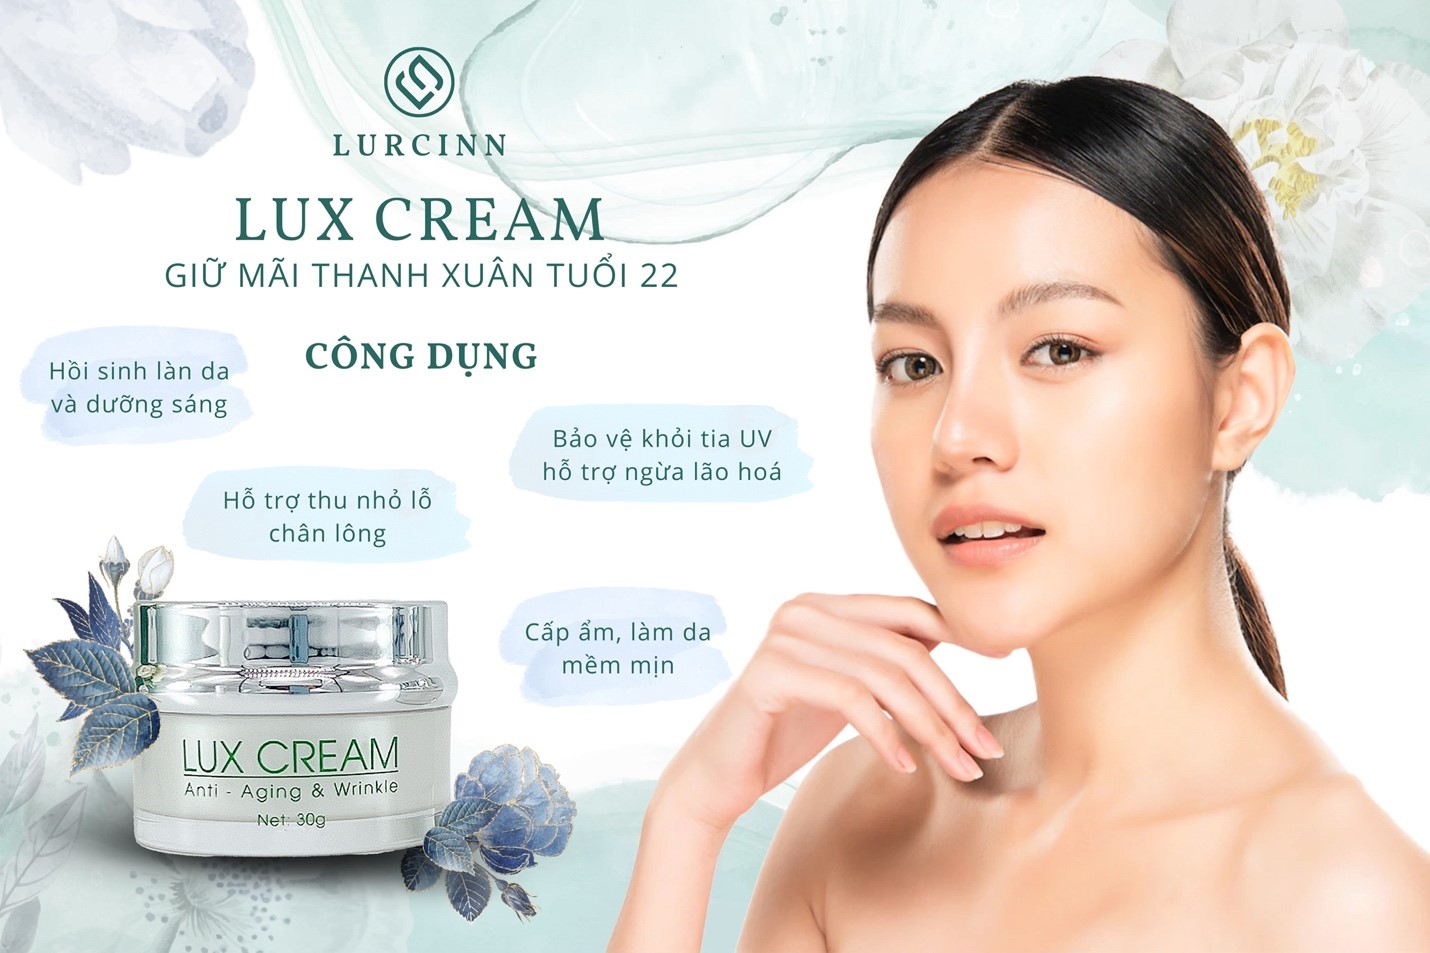 Lux Cream - Lurcinn